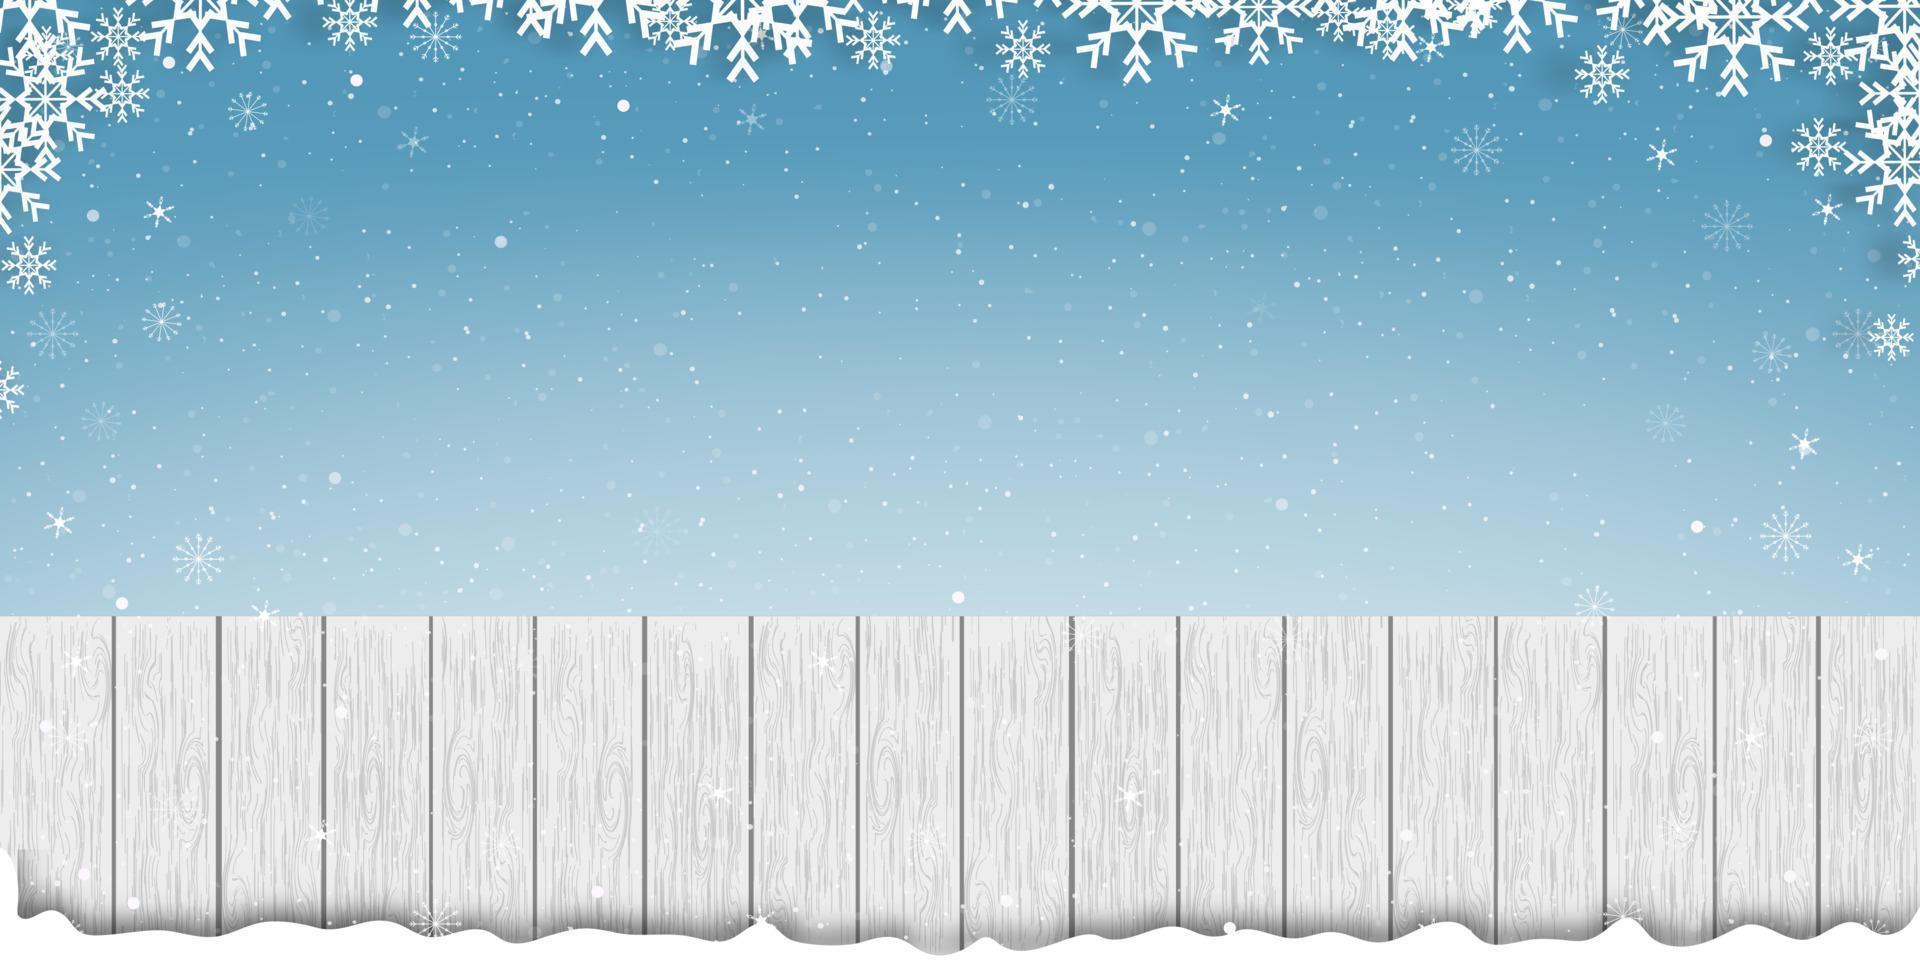 Weißes Holz mit Schneeflockenrahmen auf blauem Himmelshintergrund, Vektorbanner aus Holzstruktur mit Winterszene für Urlaubskulisse auf Weihnachts- und Neujahrsförderung oder Verkaufskonzept vektor